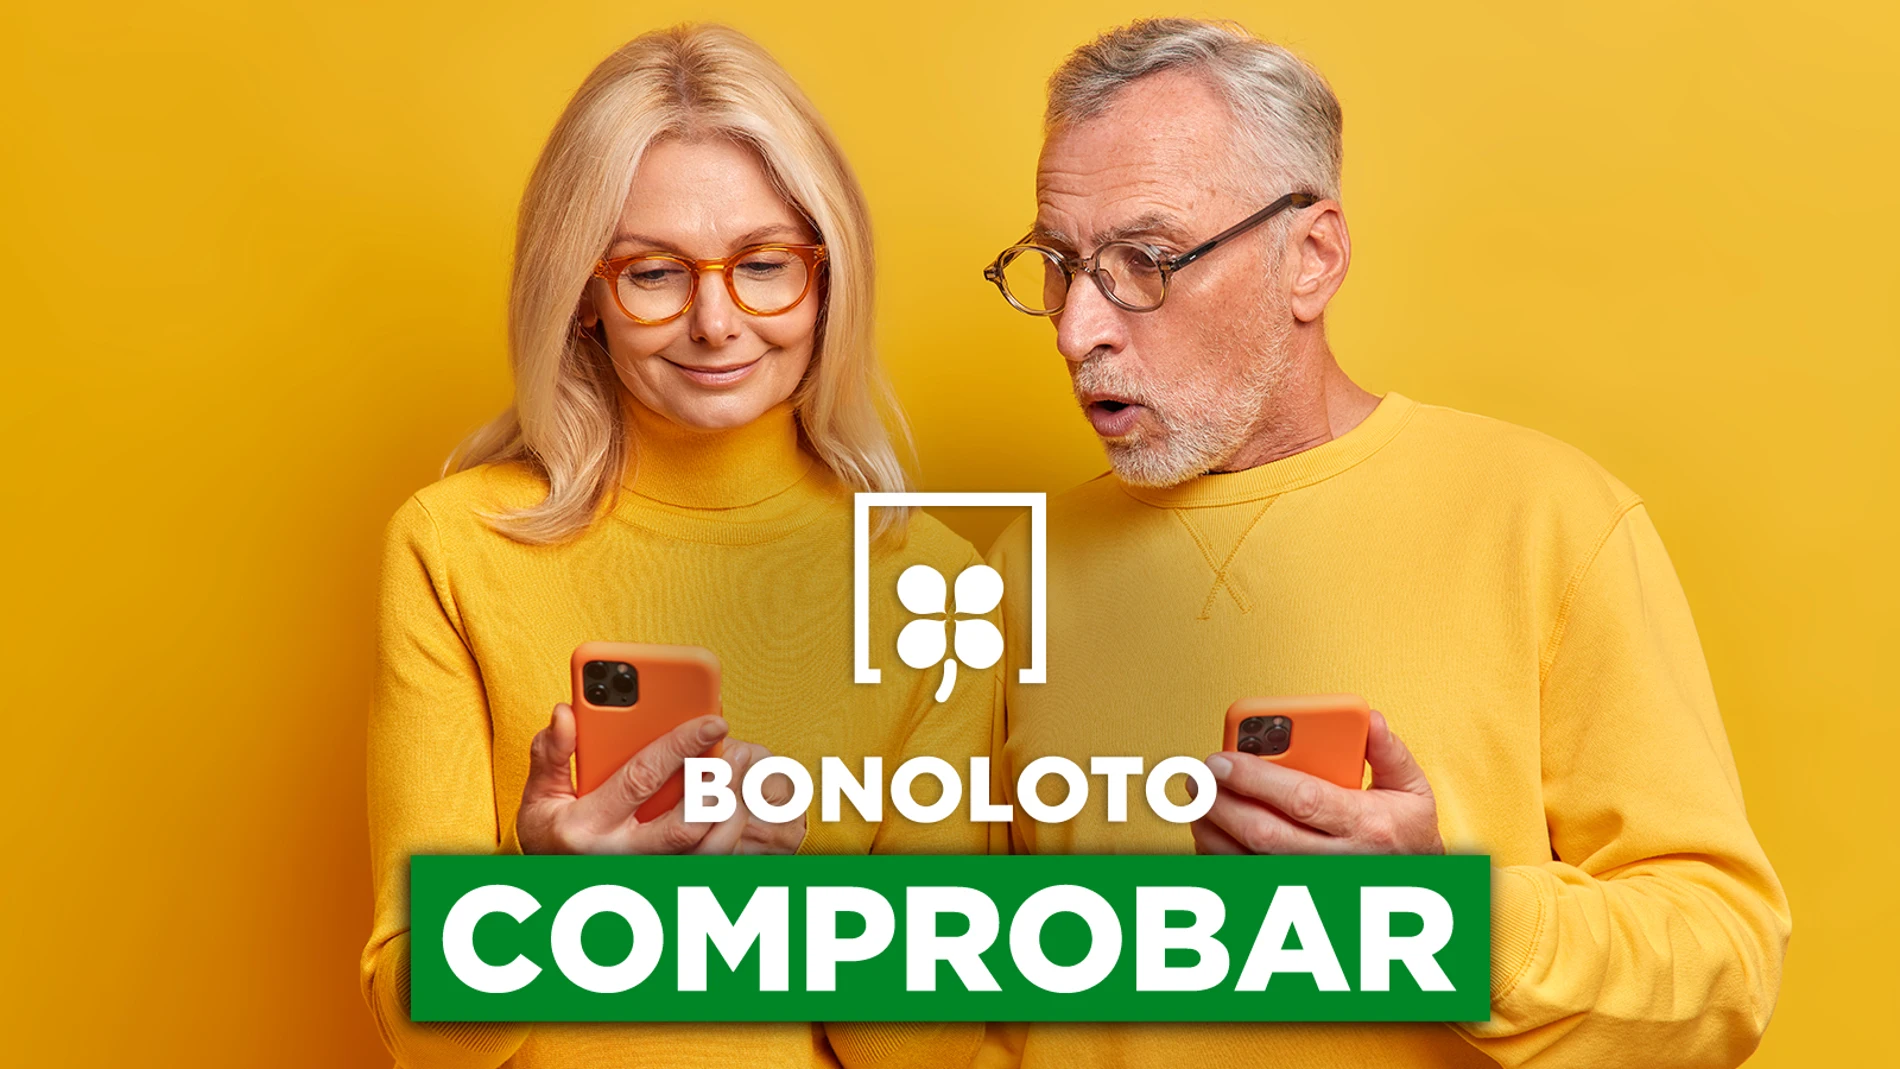 Bonoloto: comprobar hoy, viernes 2 de diciembre de 2022